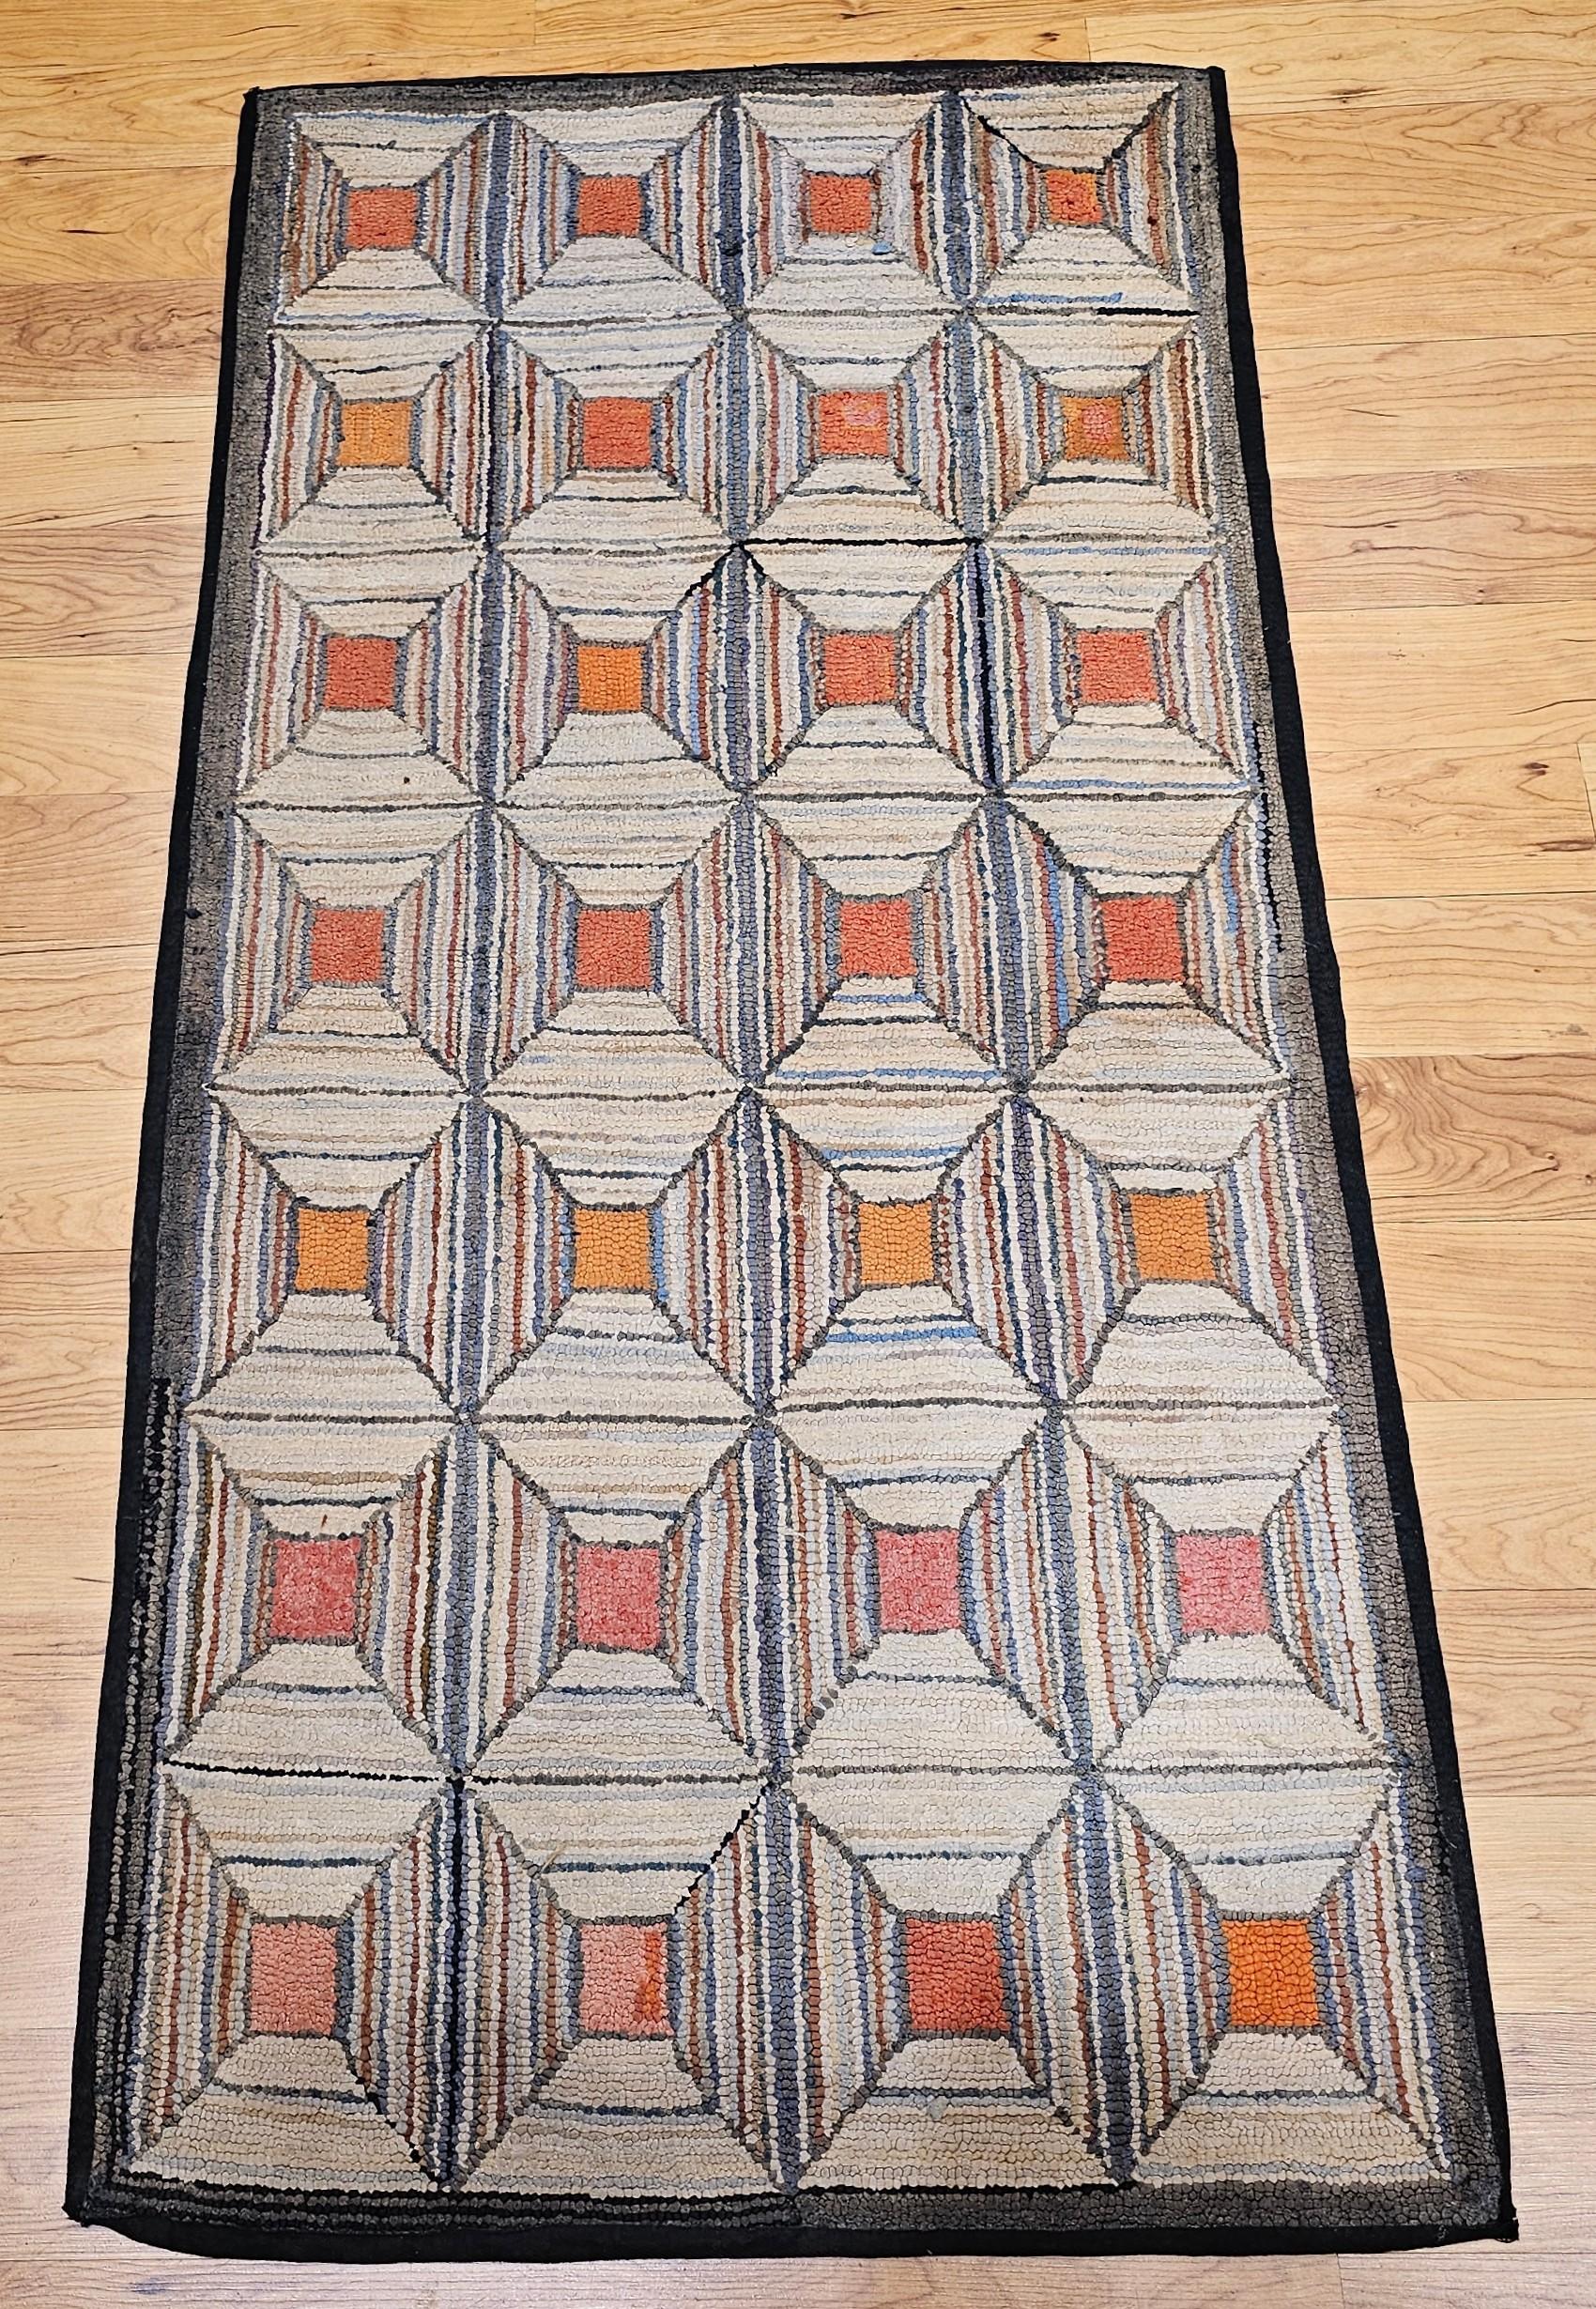  Un tapis vintage américain au crochet à motif géométrique, fabriqué à la main dans le 4e quart des années 1800 dans la région de la Nouvelle-Angleterre aux États-Unis.  Le design de chaque bloc donne l'impression de regarder dans un entonnoir, la